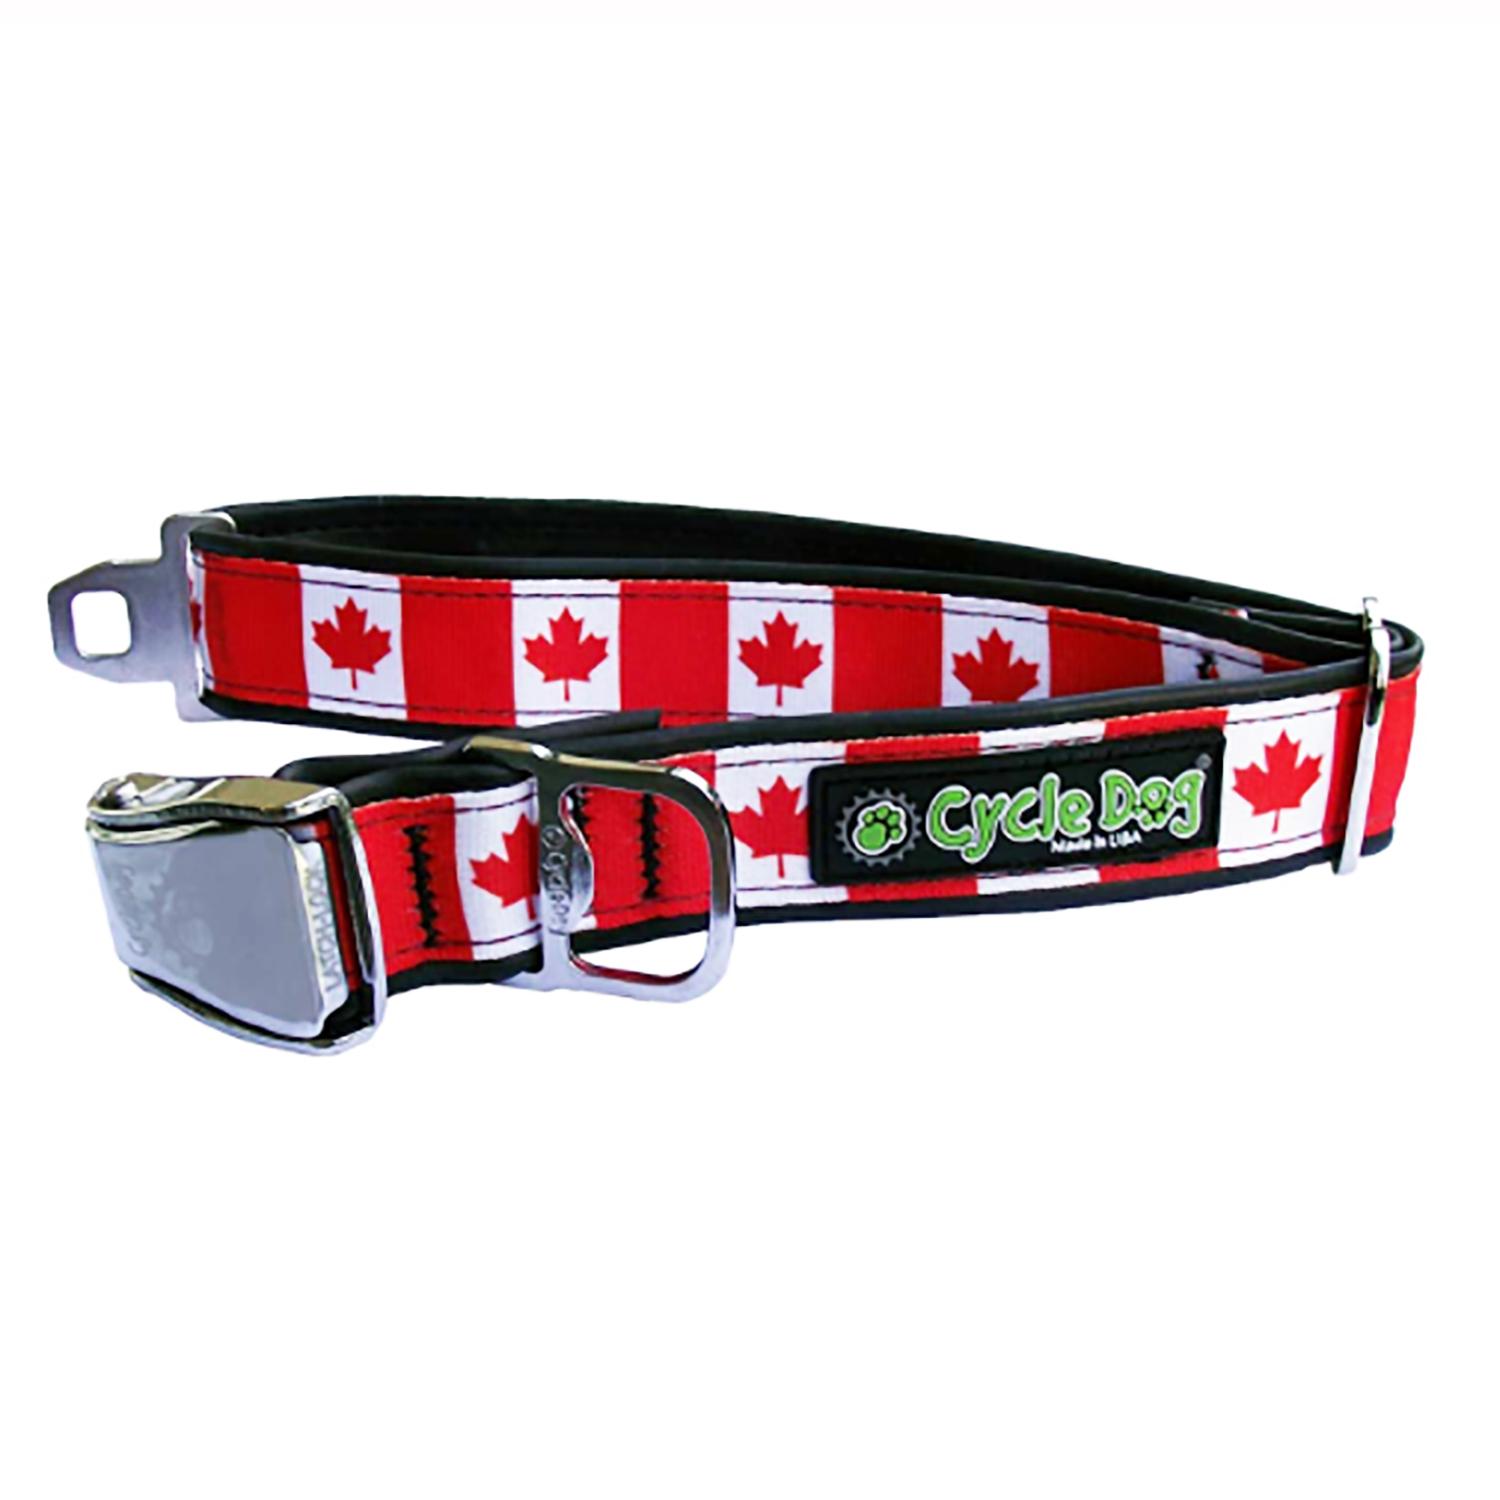 Cycle Dog Canada Maple Leaf Metal Latch Dog Collar